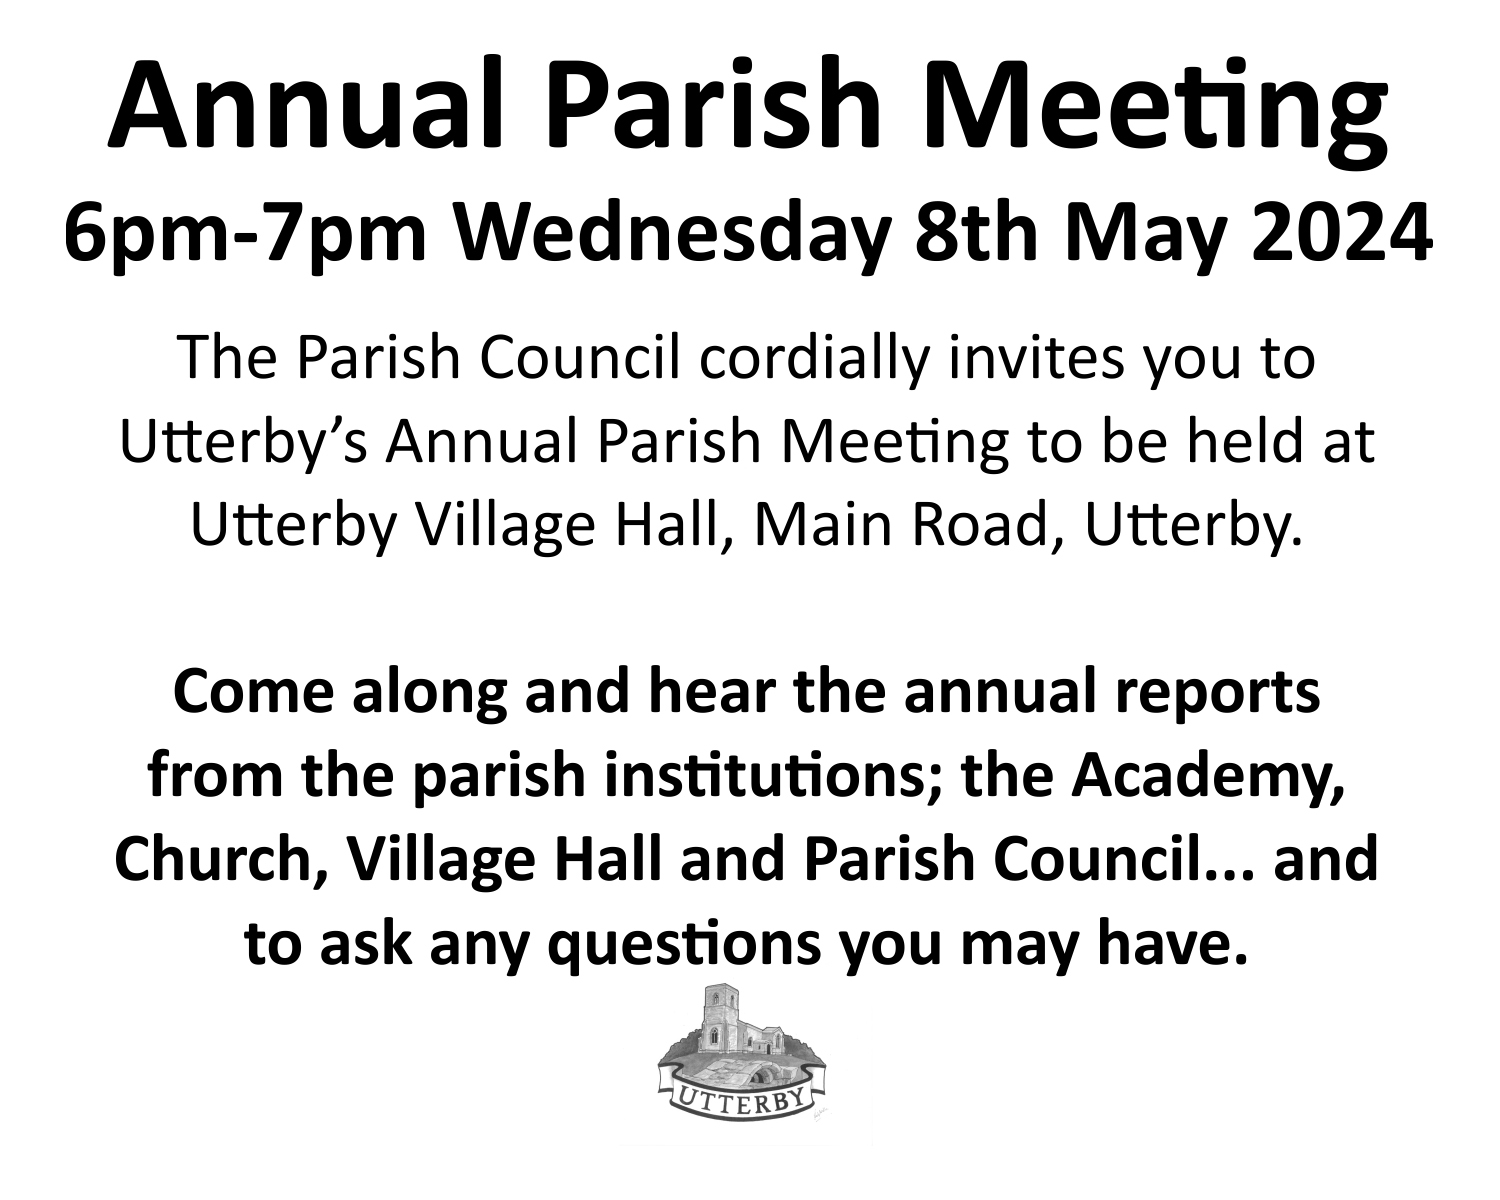 Annual parish meeting 2024